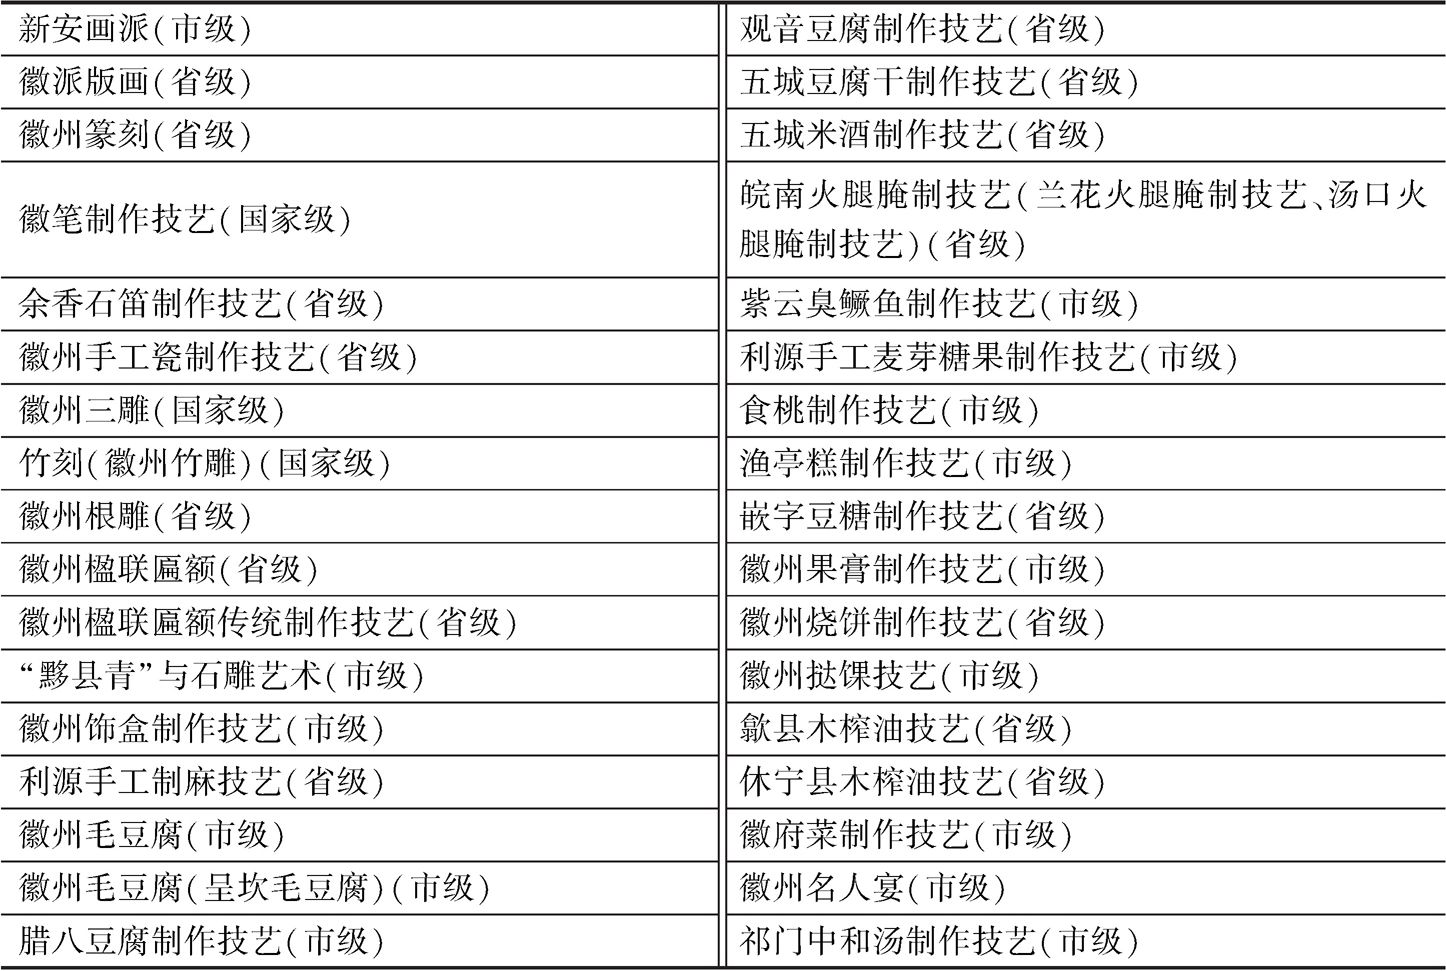 表9 黄山市再生开发为产业的技艺名录（截至2018年12月）